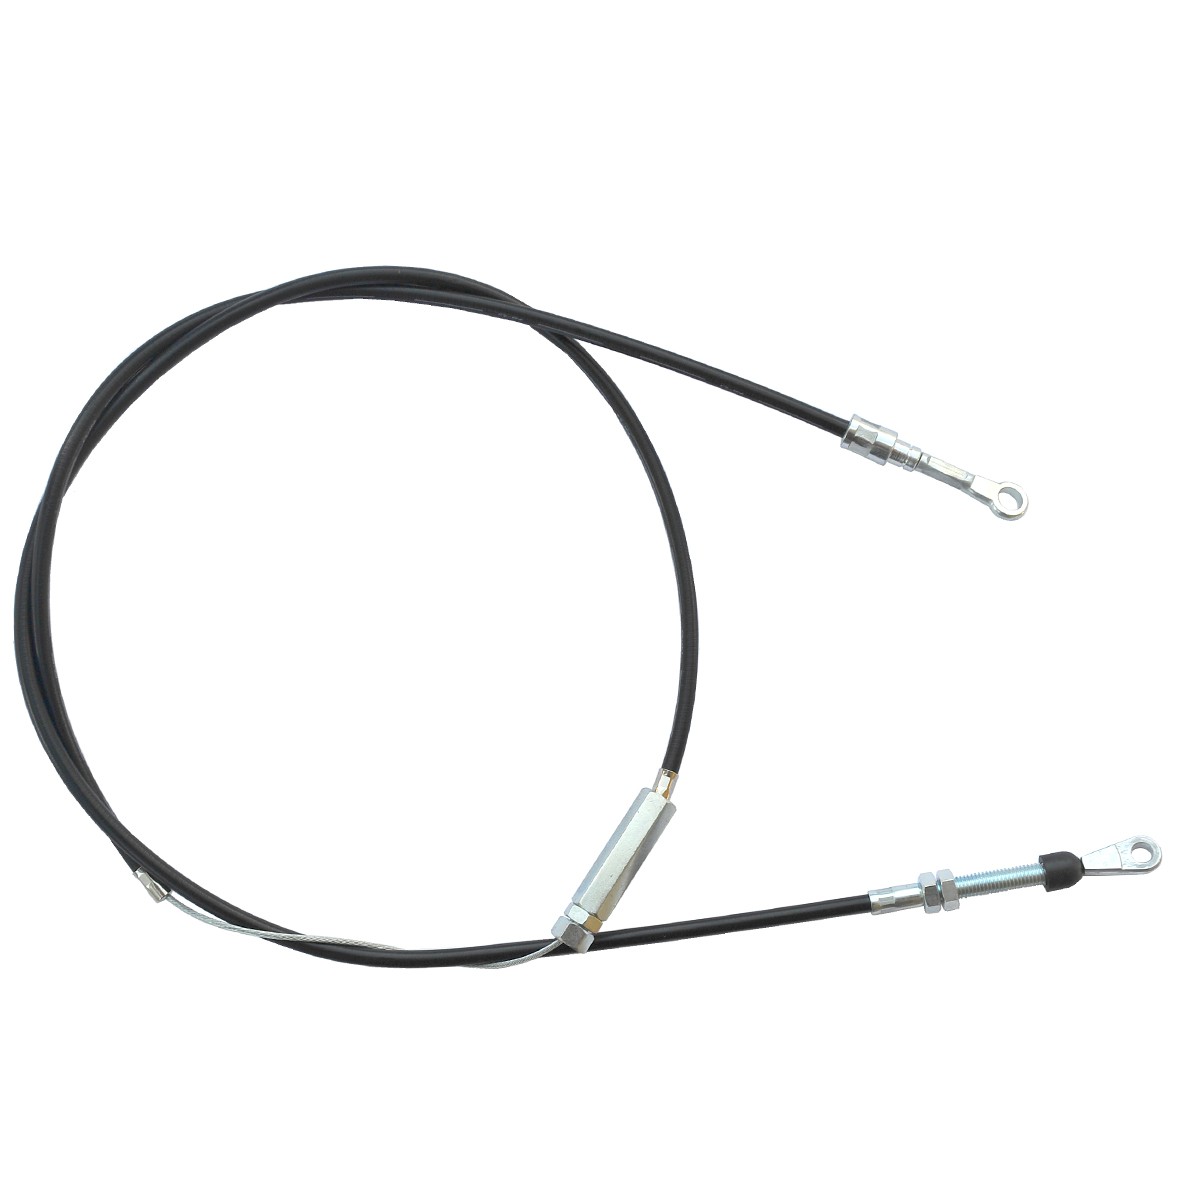 Cable de embrague Iseki SXG19 / 1530 mm / 1728-334-240-30